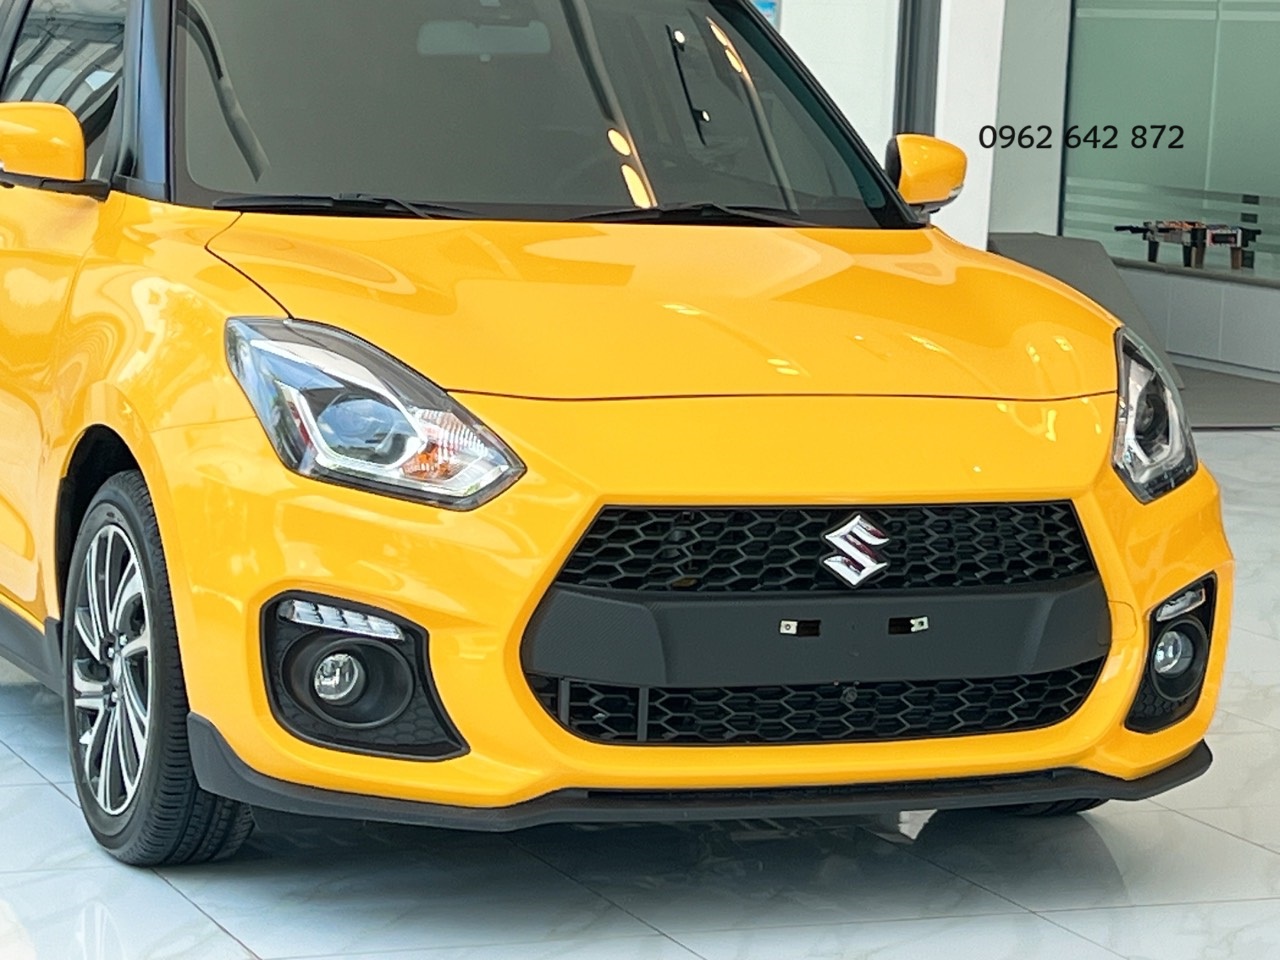  Thay thế cản trước zin của xe Suzuki suzuki swift màu vàng, giúp xe trông hầm hố và thể thao hơn.